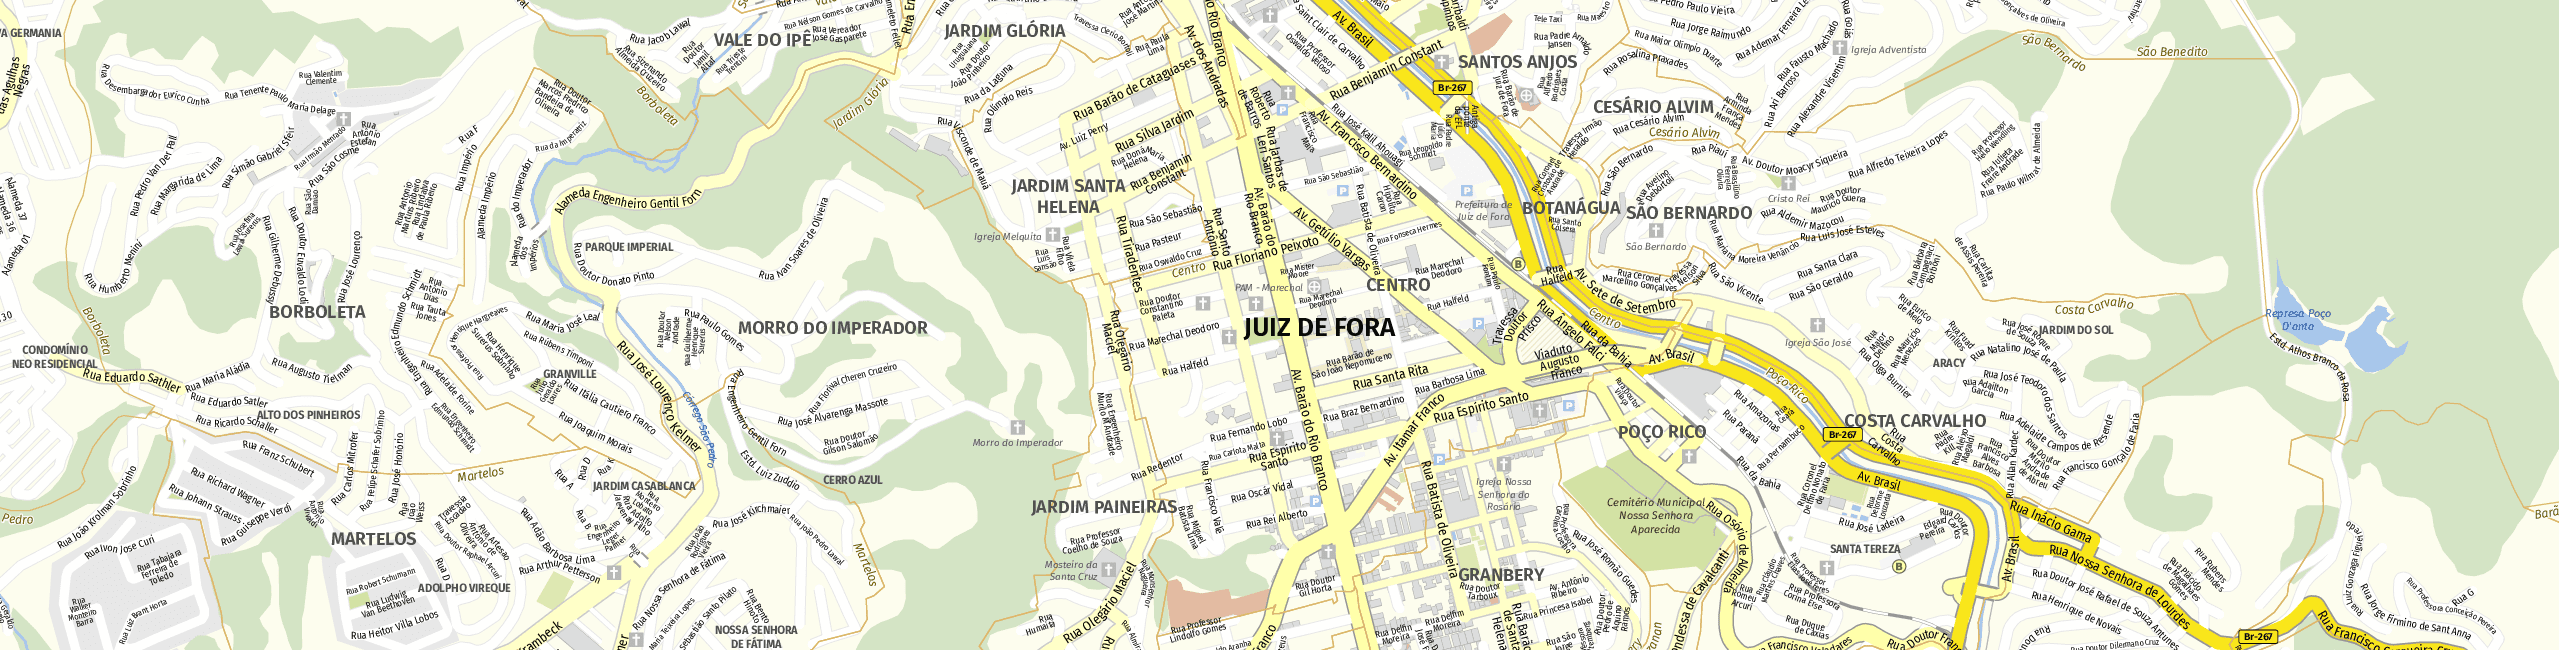 Stadtplan Juiz de Fora zum Downloaden.